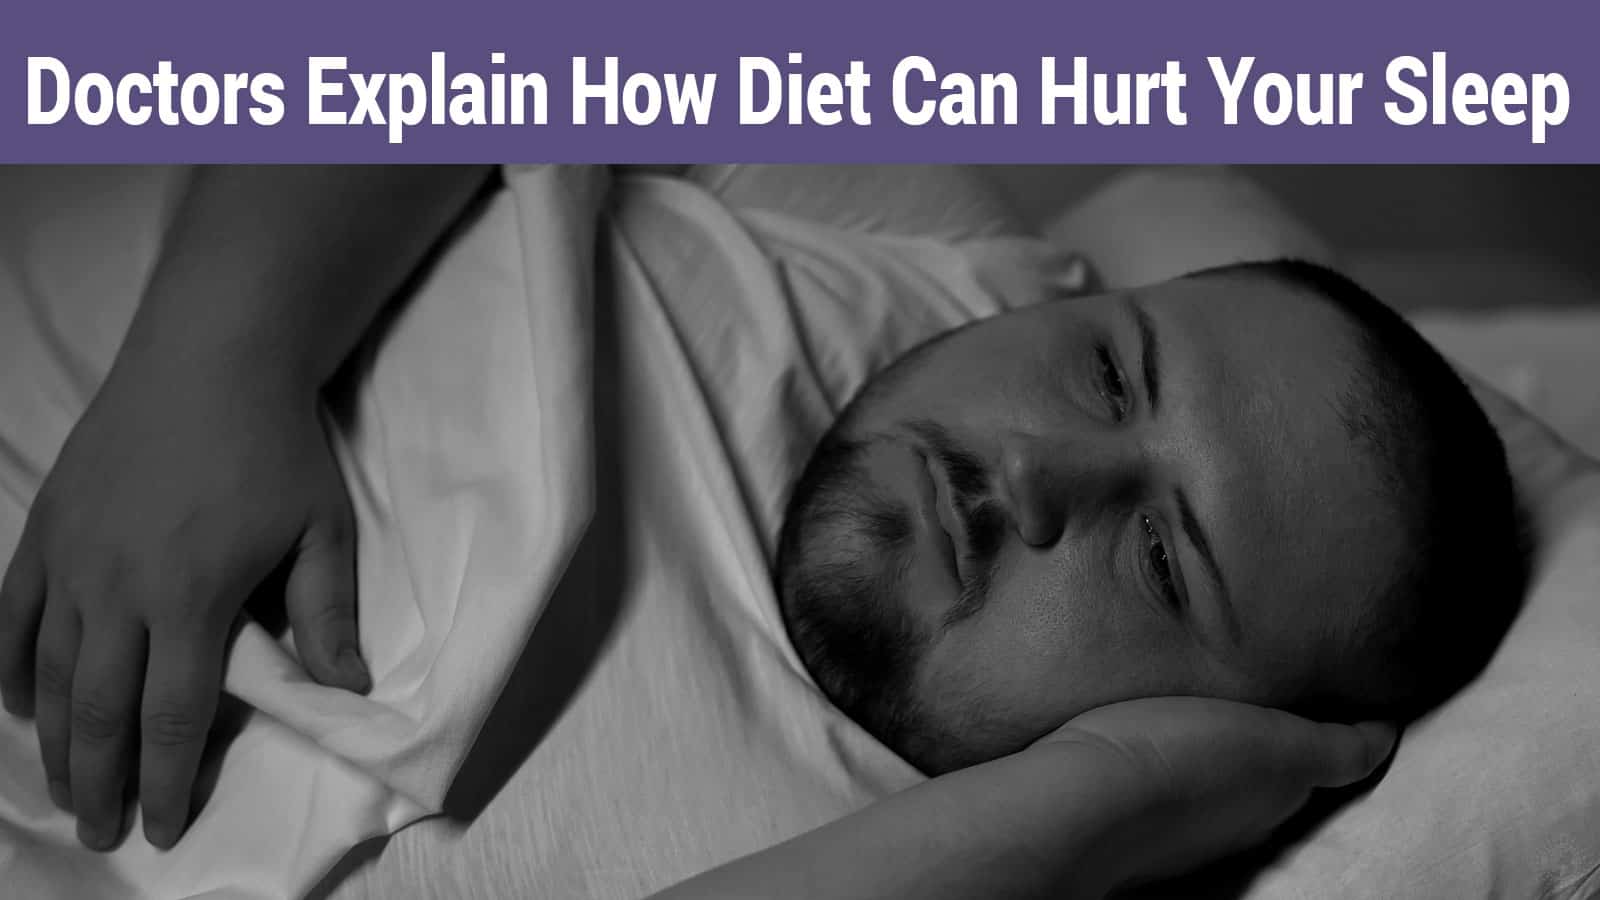 Doctors Explain How Diet Can Hurt Sleep